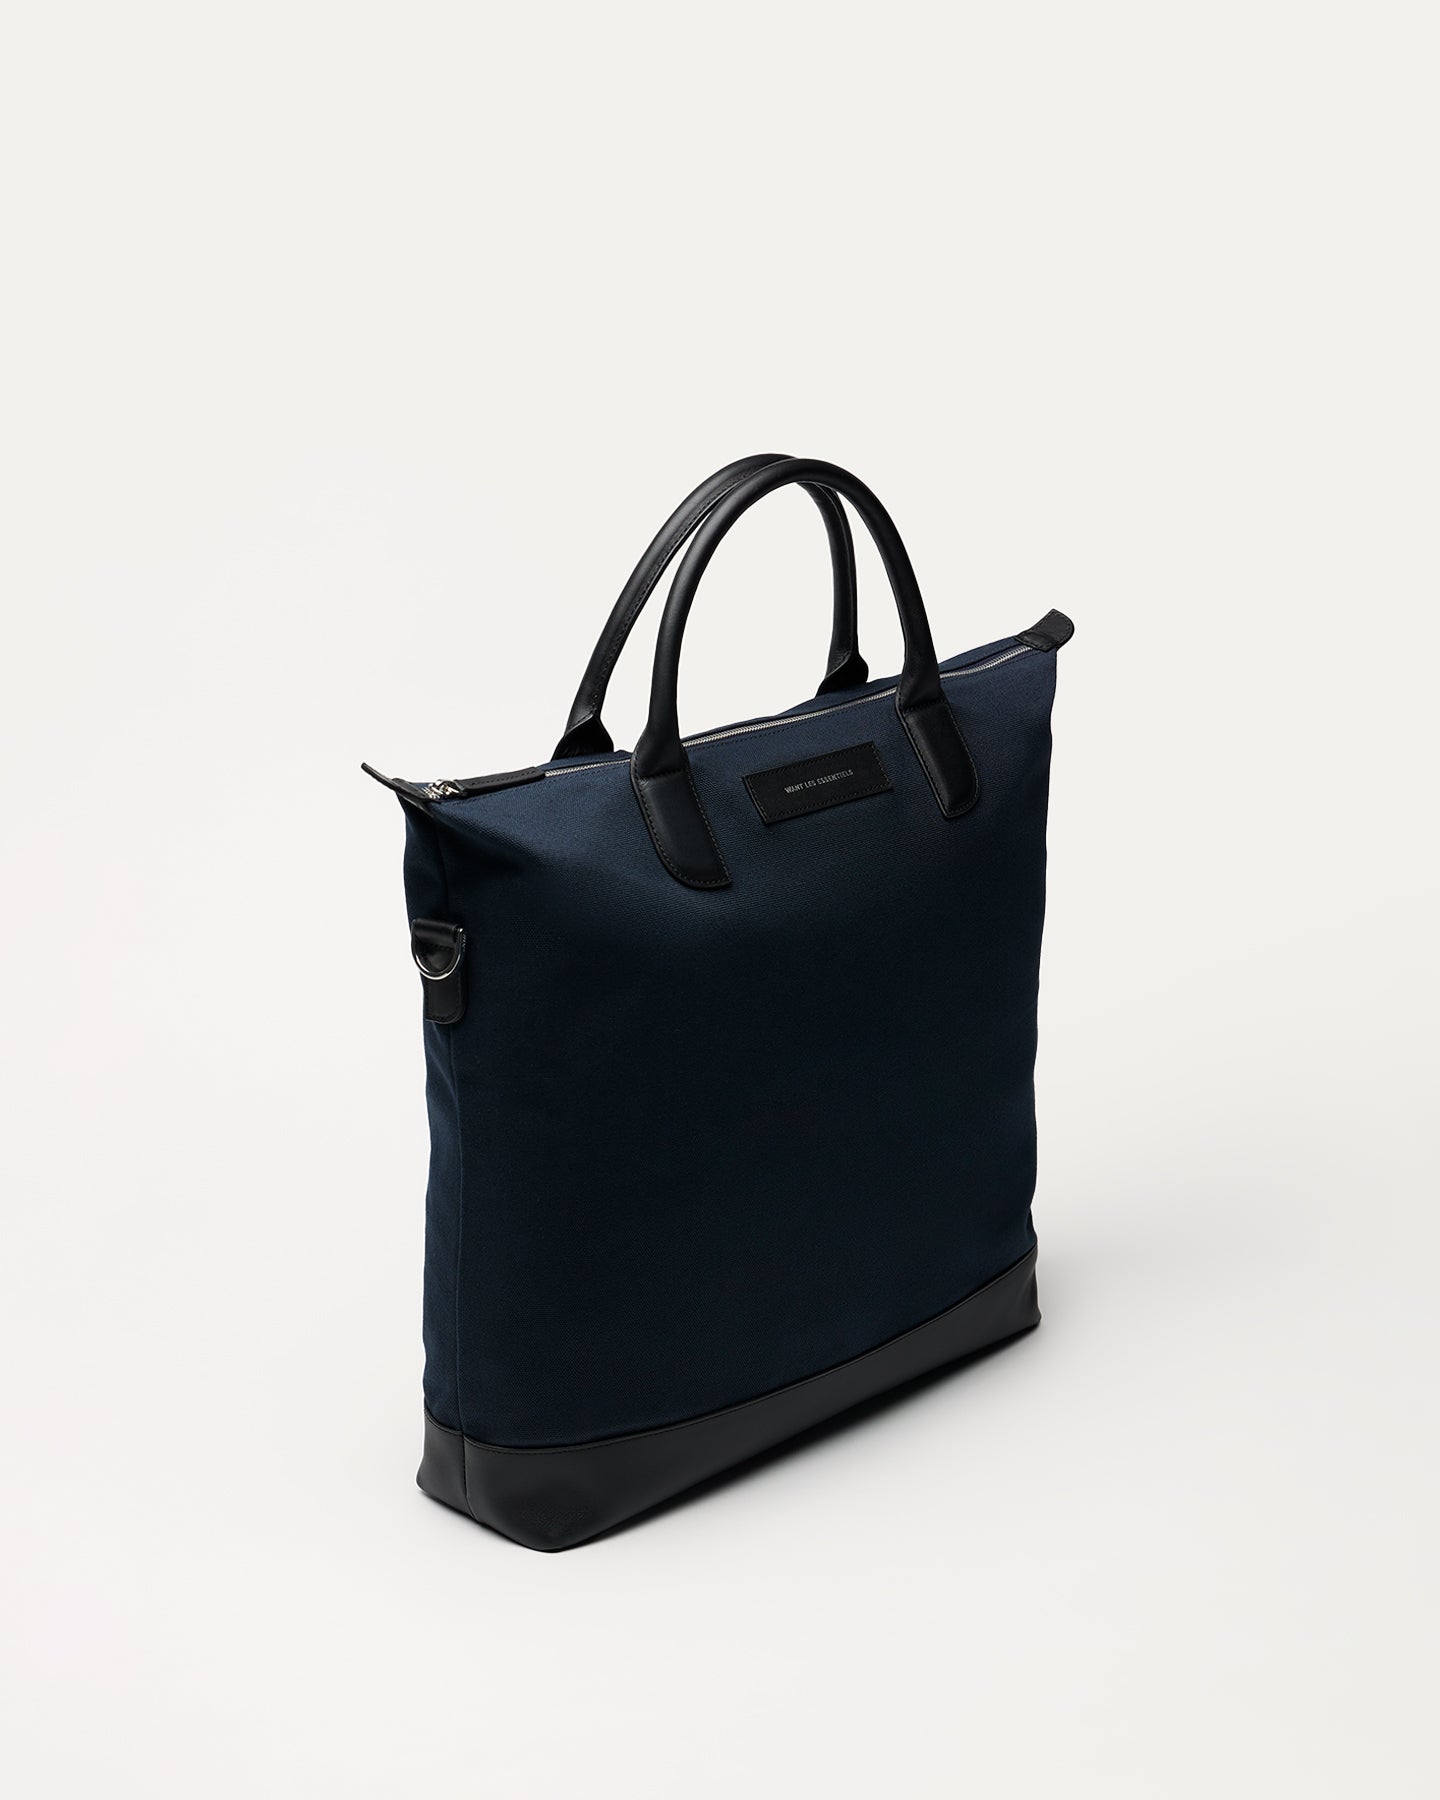 Minimalist Design Bags | Shop Luxury Bags Online | WANT Les Essentiels